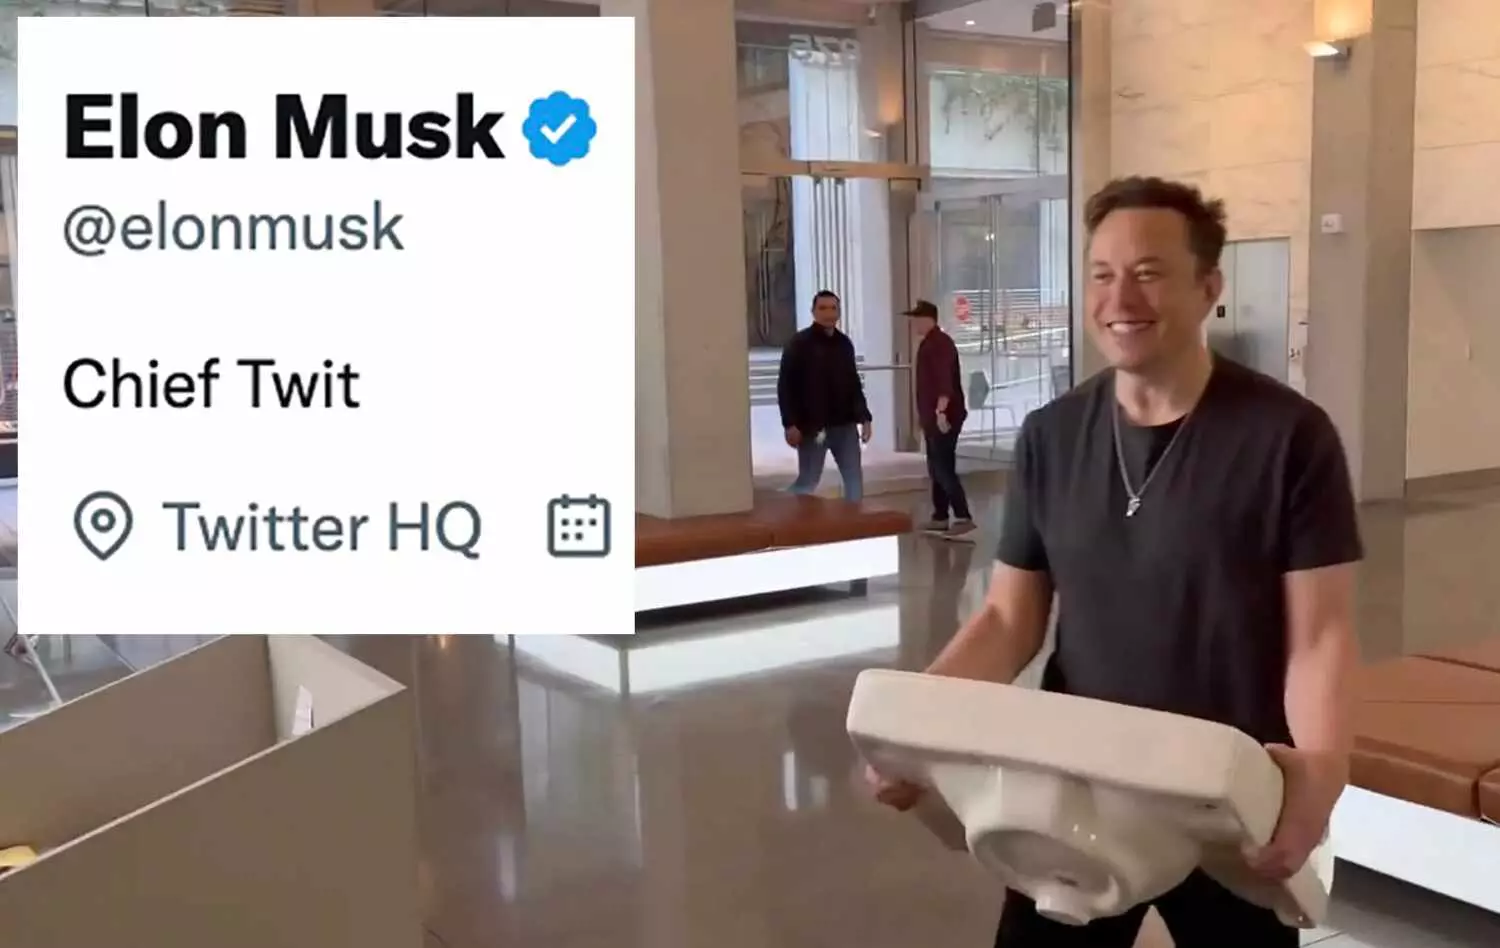 Elon Musk : हाथों में वॉश बेसिन लेकर ट्विटर हेडक्वार्टर पहुंचे एलन मस्क, Twitter Bio में लिखा- Chief Twit